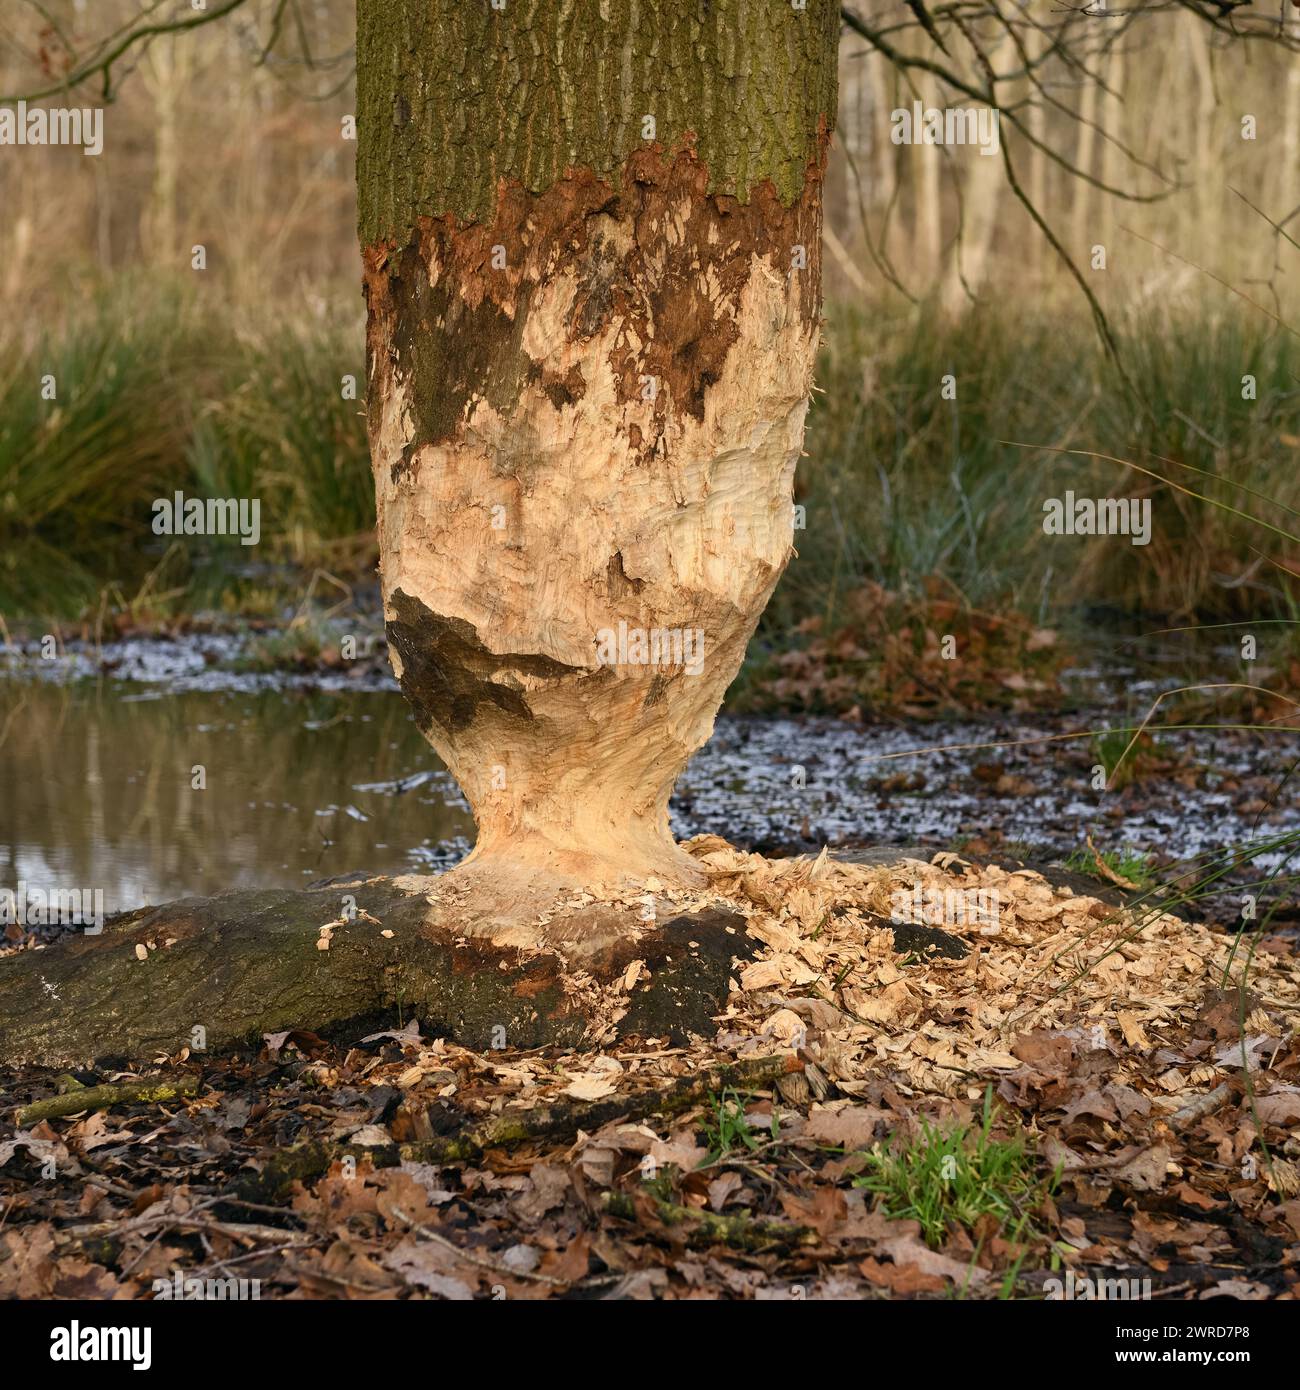 le castor était là... Chêne grignoté ( Fagus sylvatica ) au bord d'un plan d'eau, nature en Europe. Banque D'Images